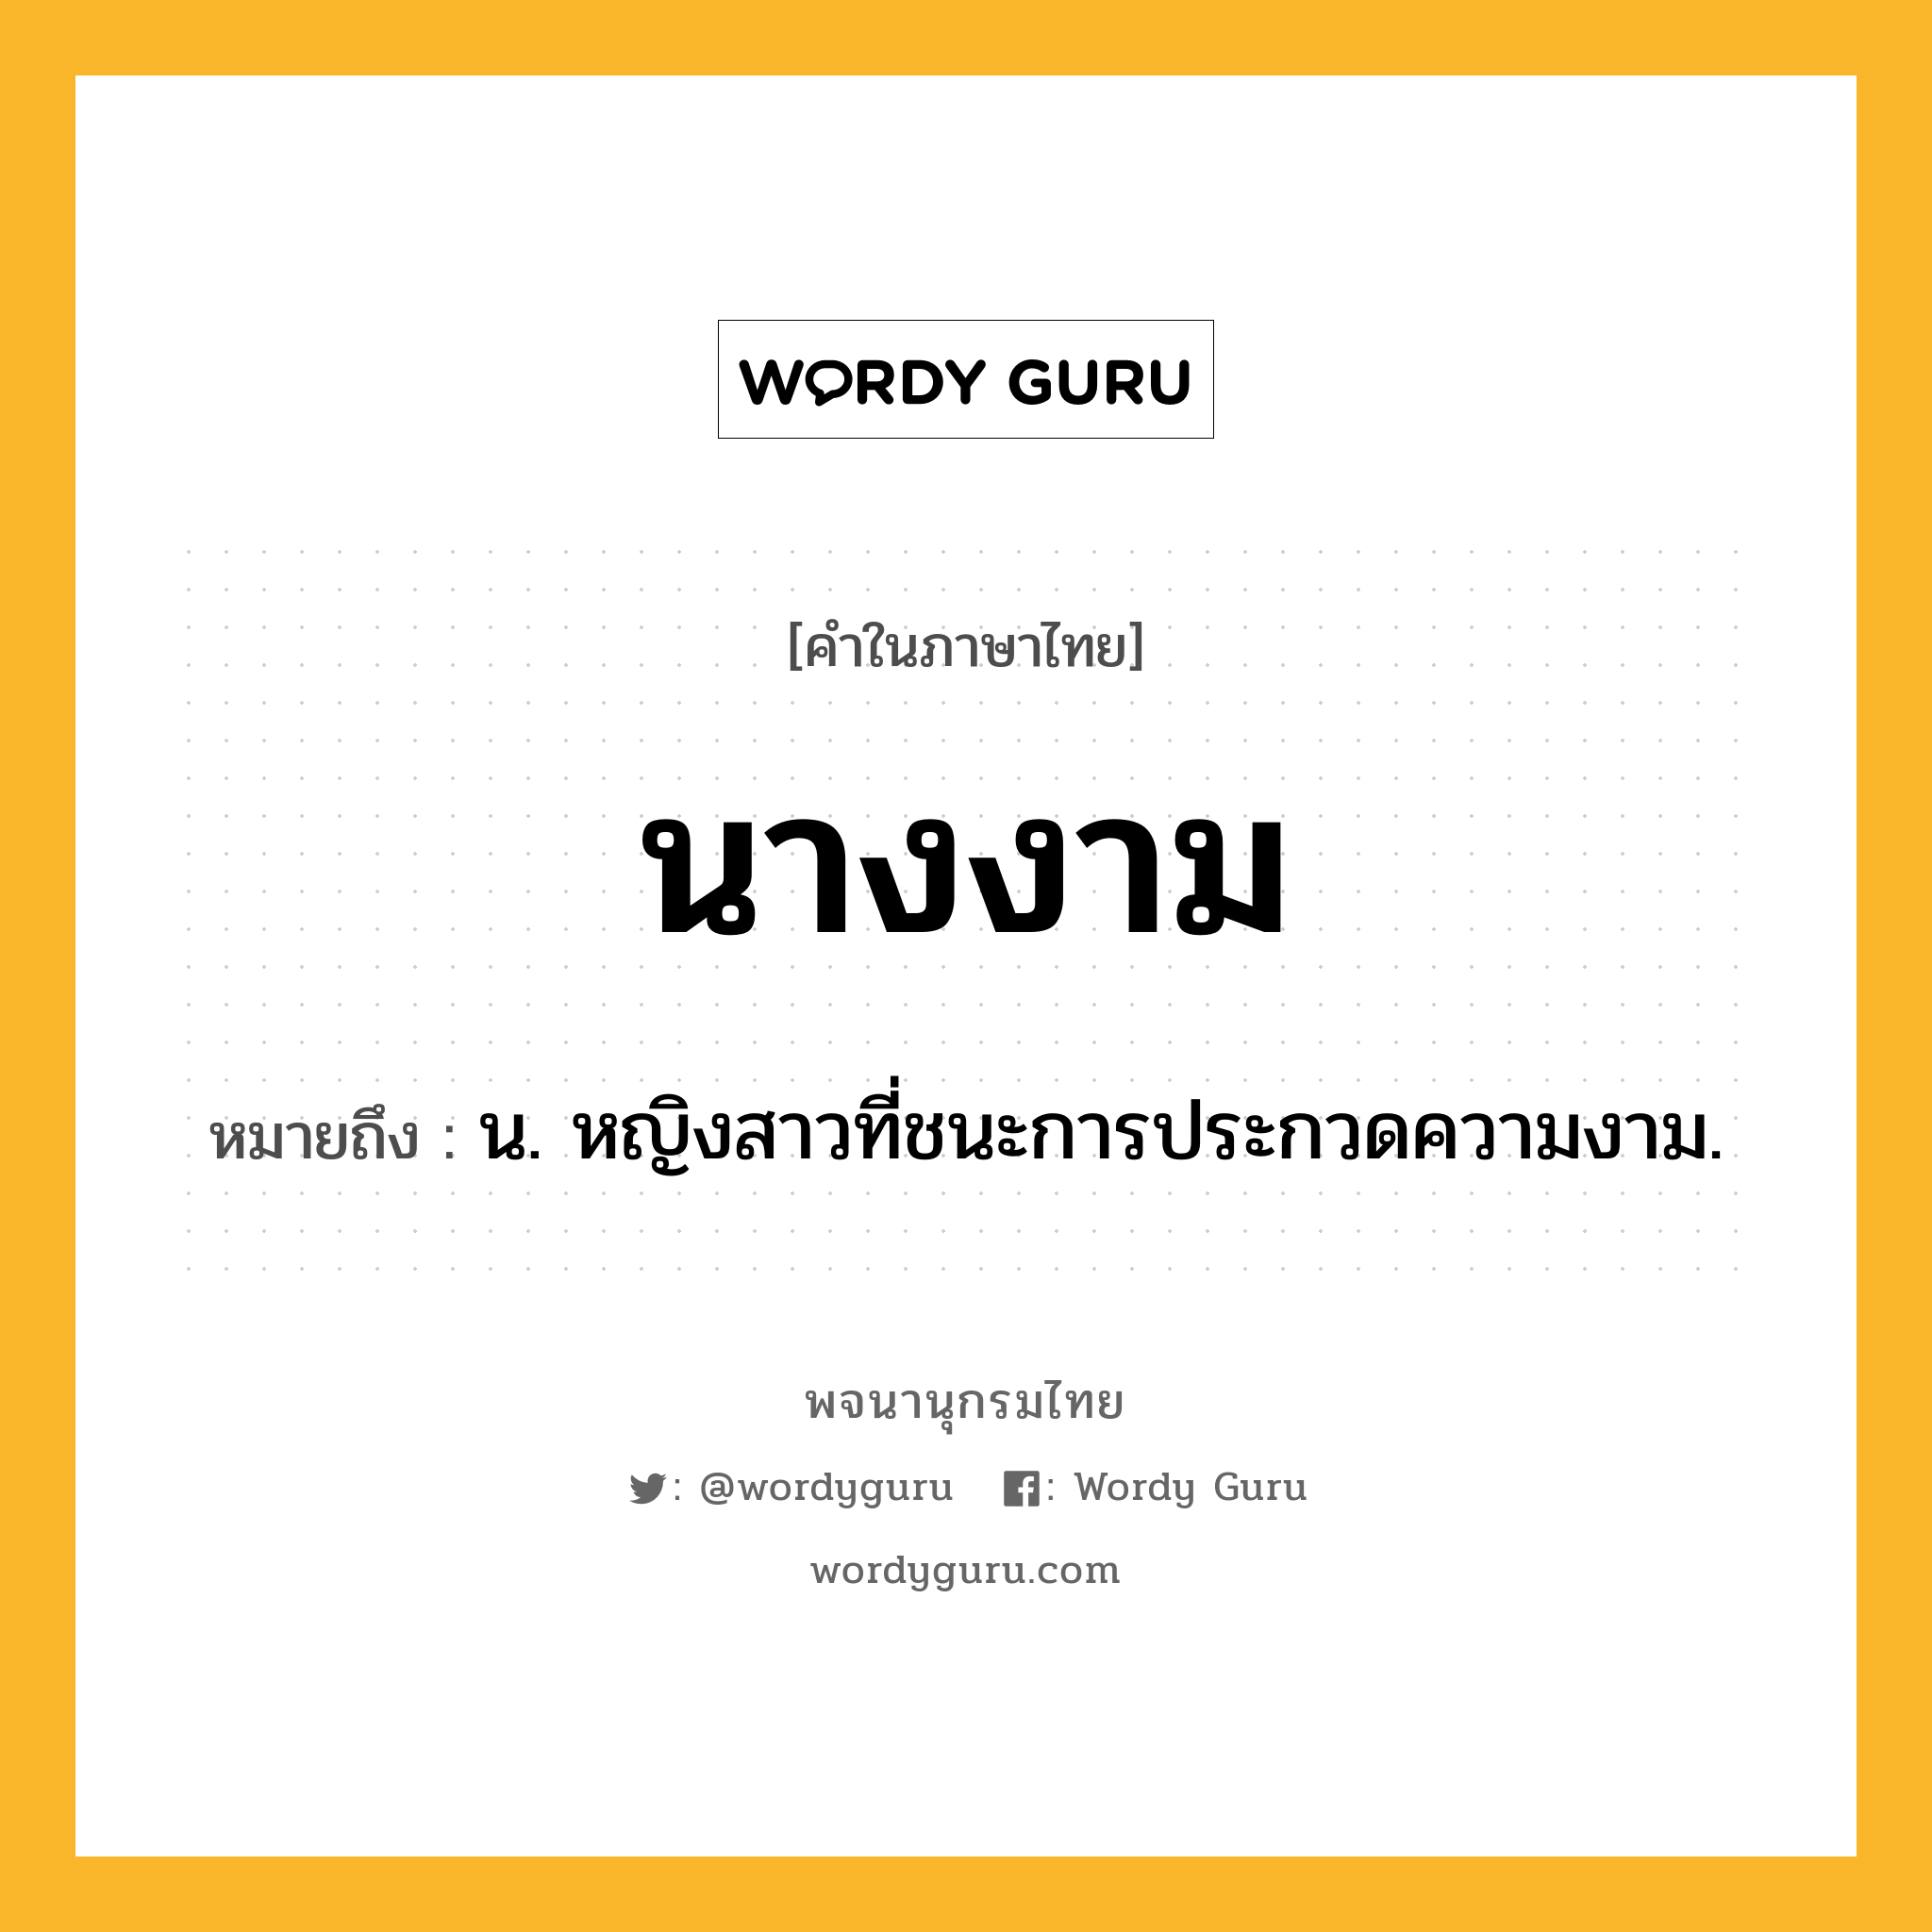 นางงาม ความหมาย หมายถึงอะไร?, คำในภาษาไทย นางงาม หมายถึง น. หญิงสาวที่ชนะการประกวดความงาม.